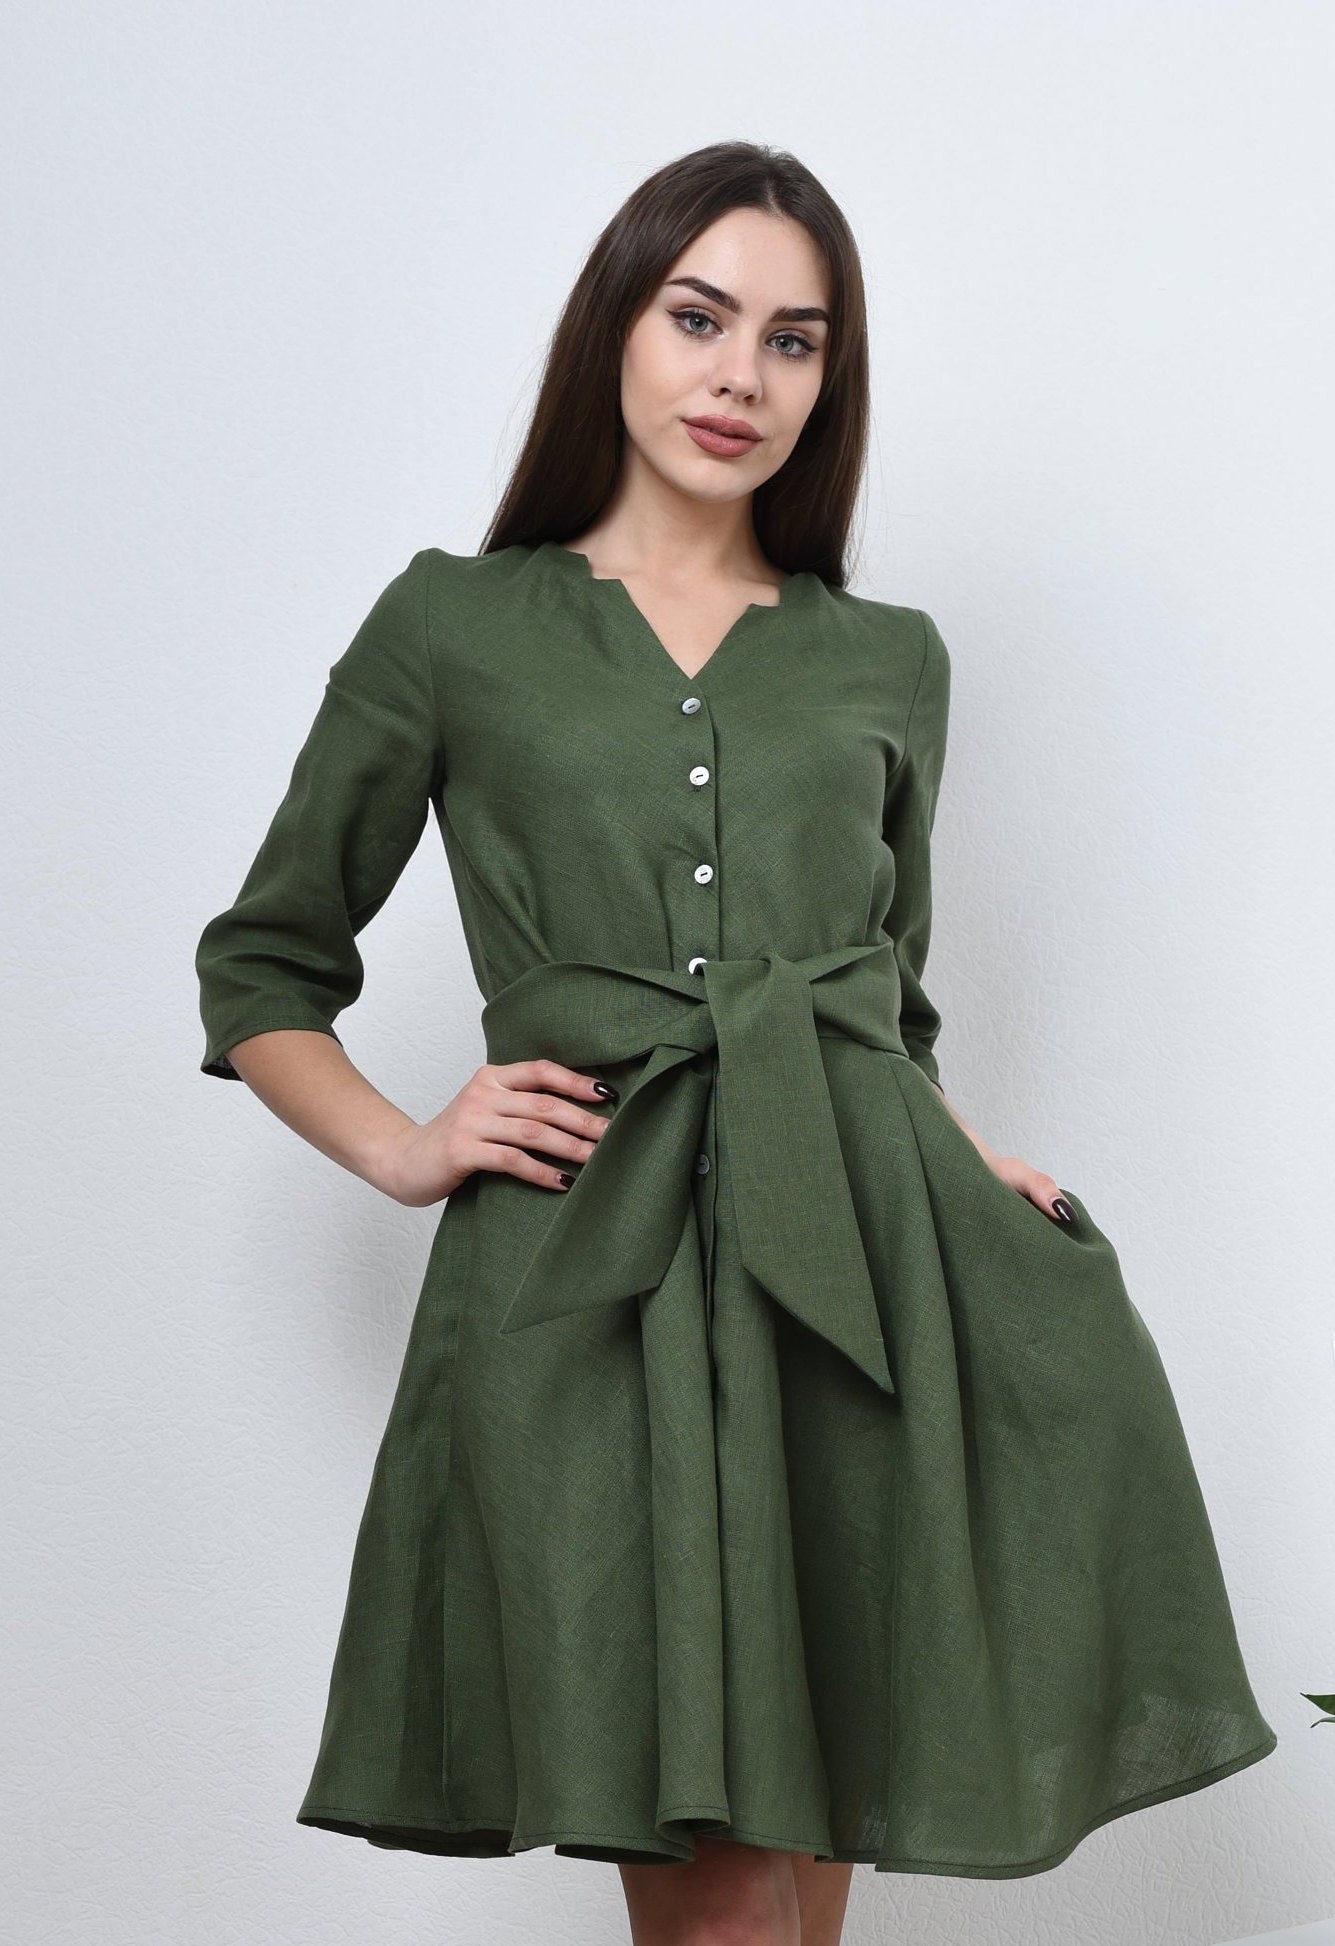 LINEN DRESS MEGAN. Green linen dress. Linen shirt dress | Etsy